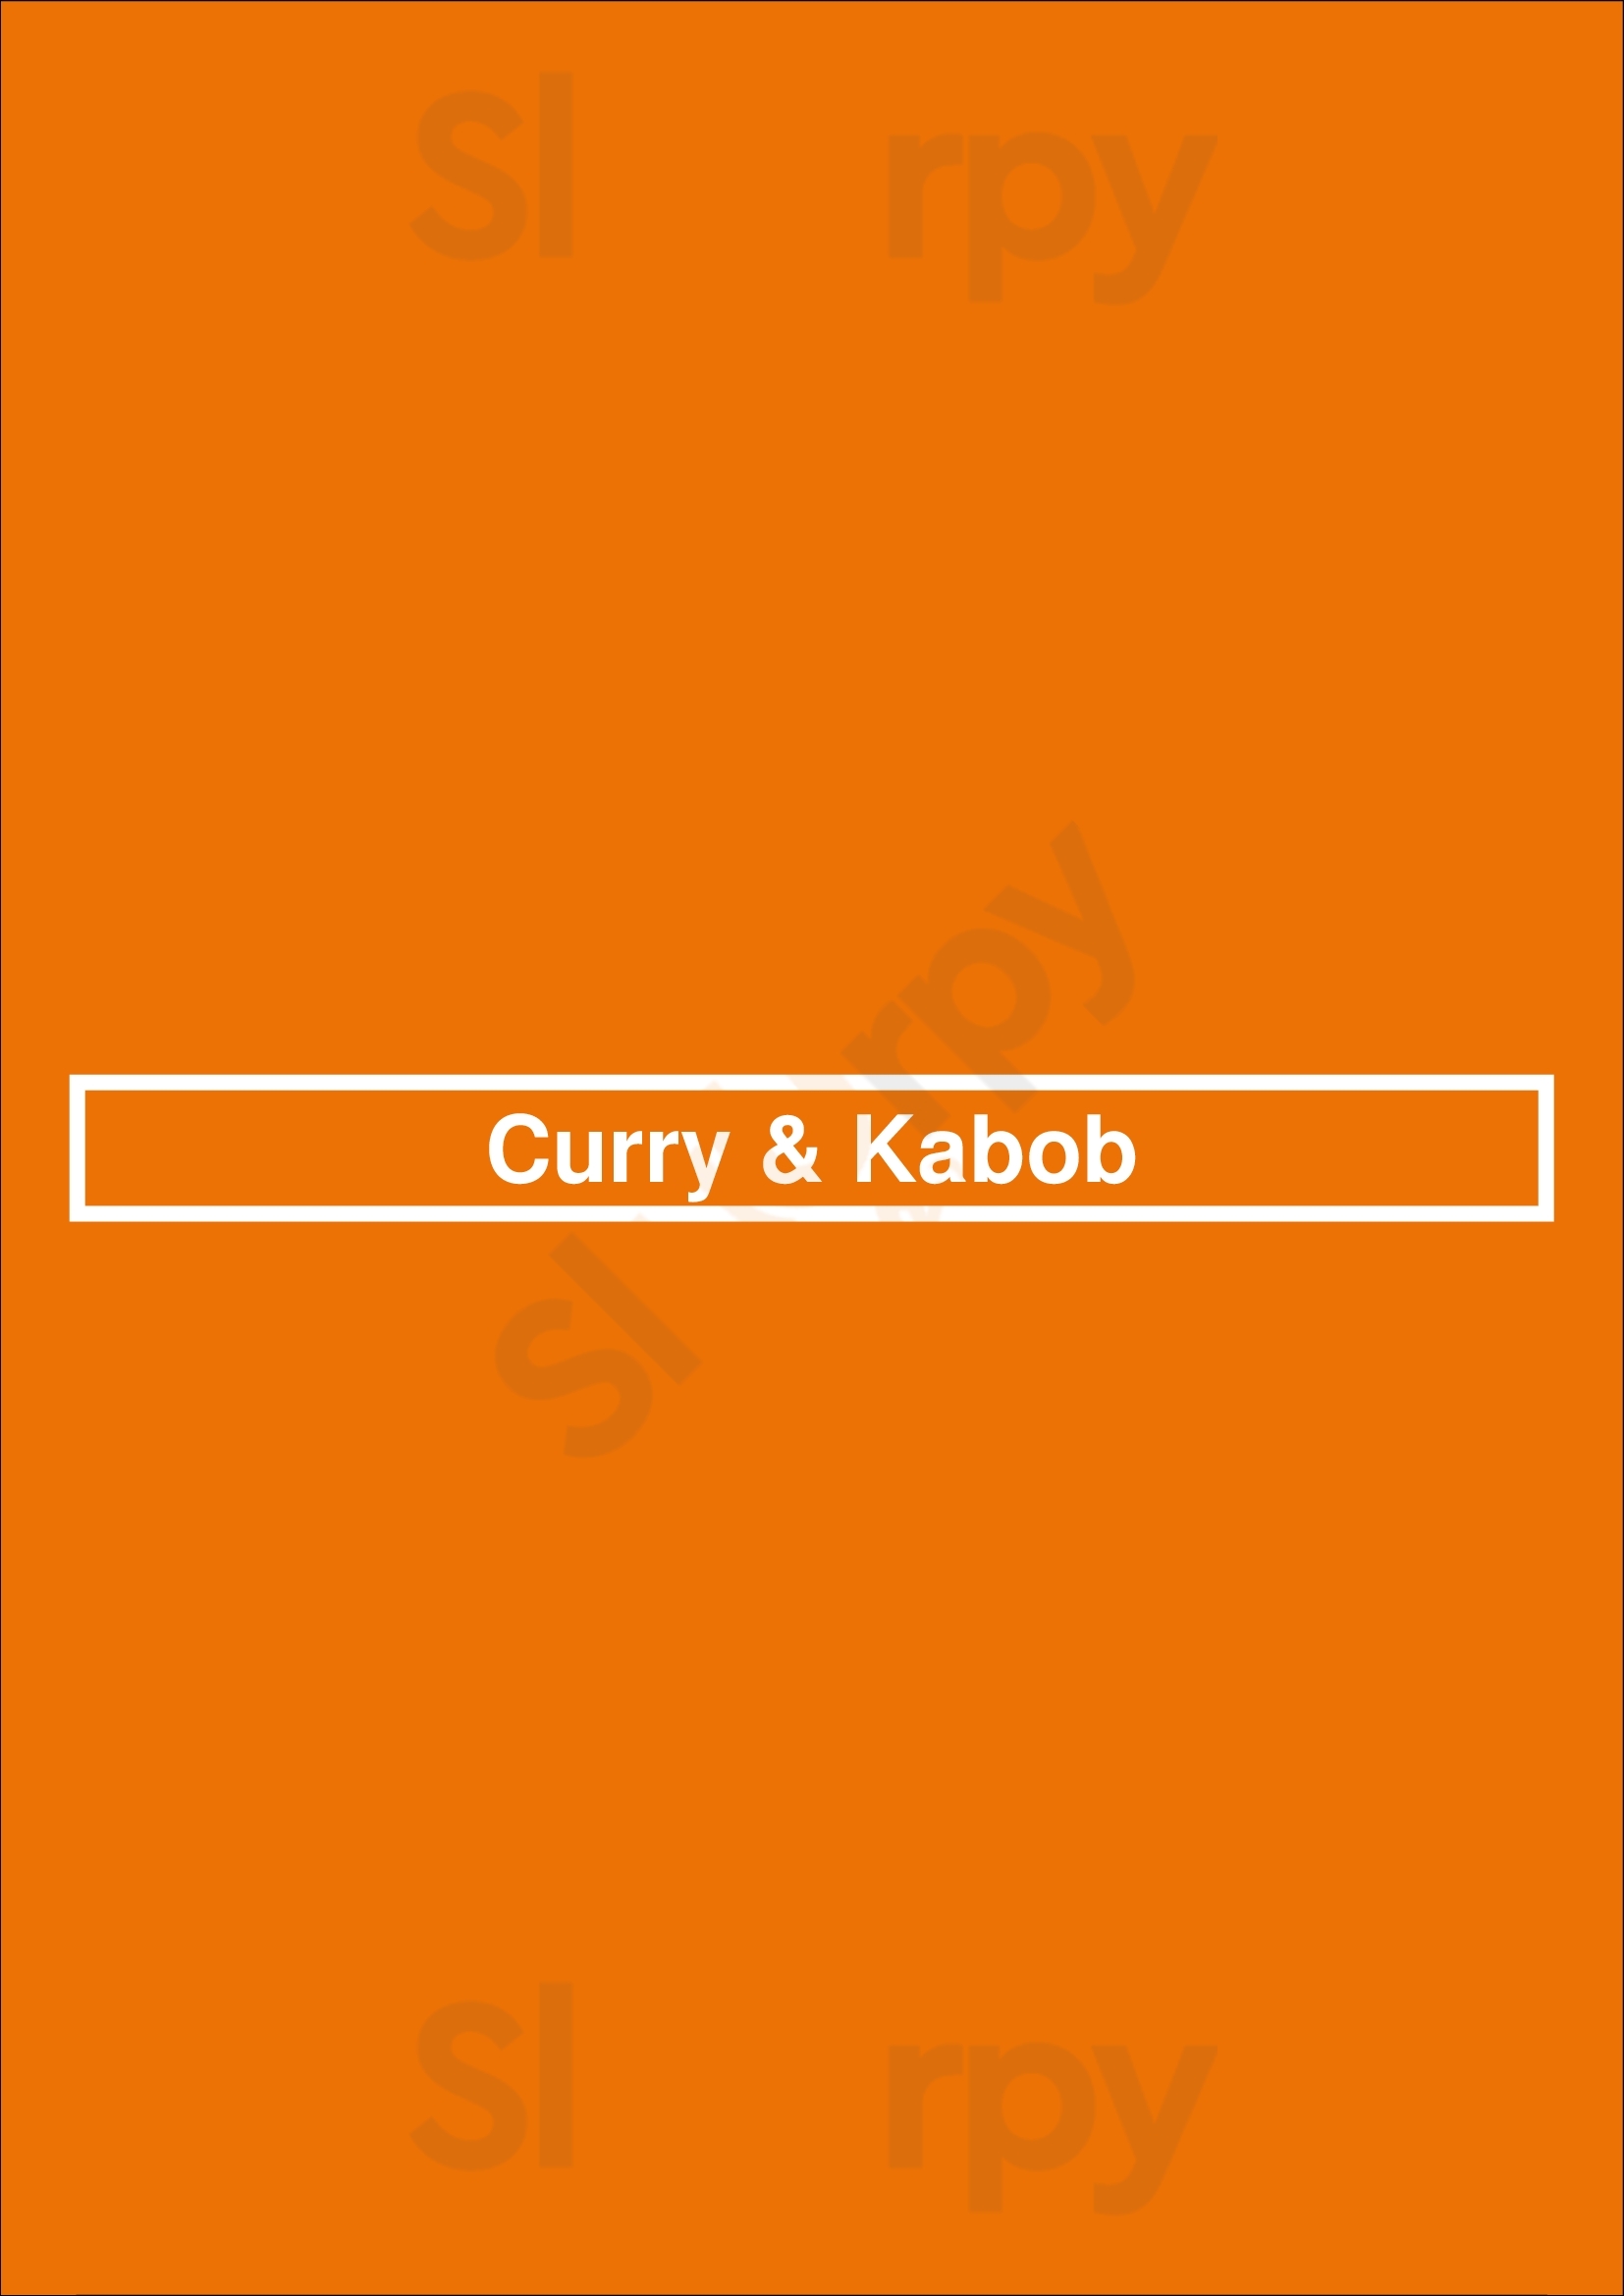 Curry & Kabob Columbia Menu - 1